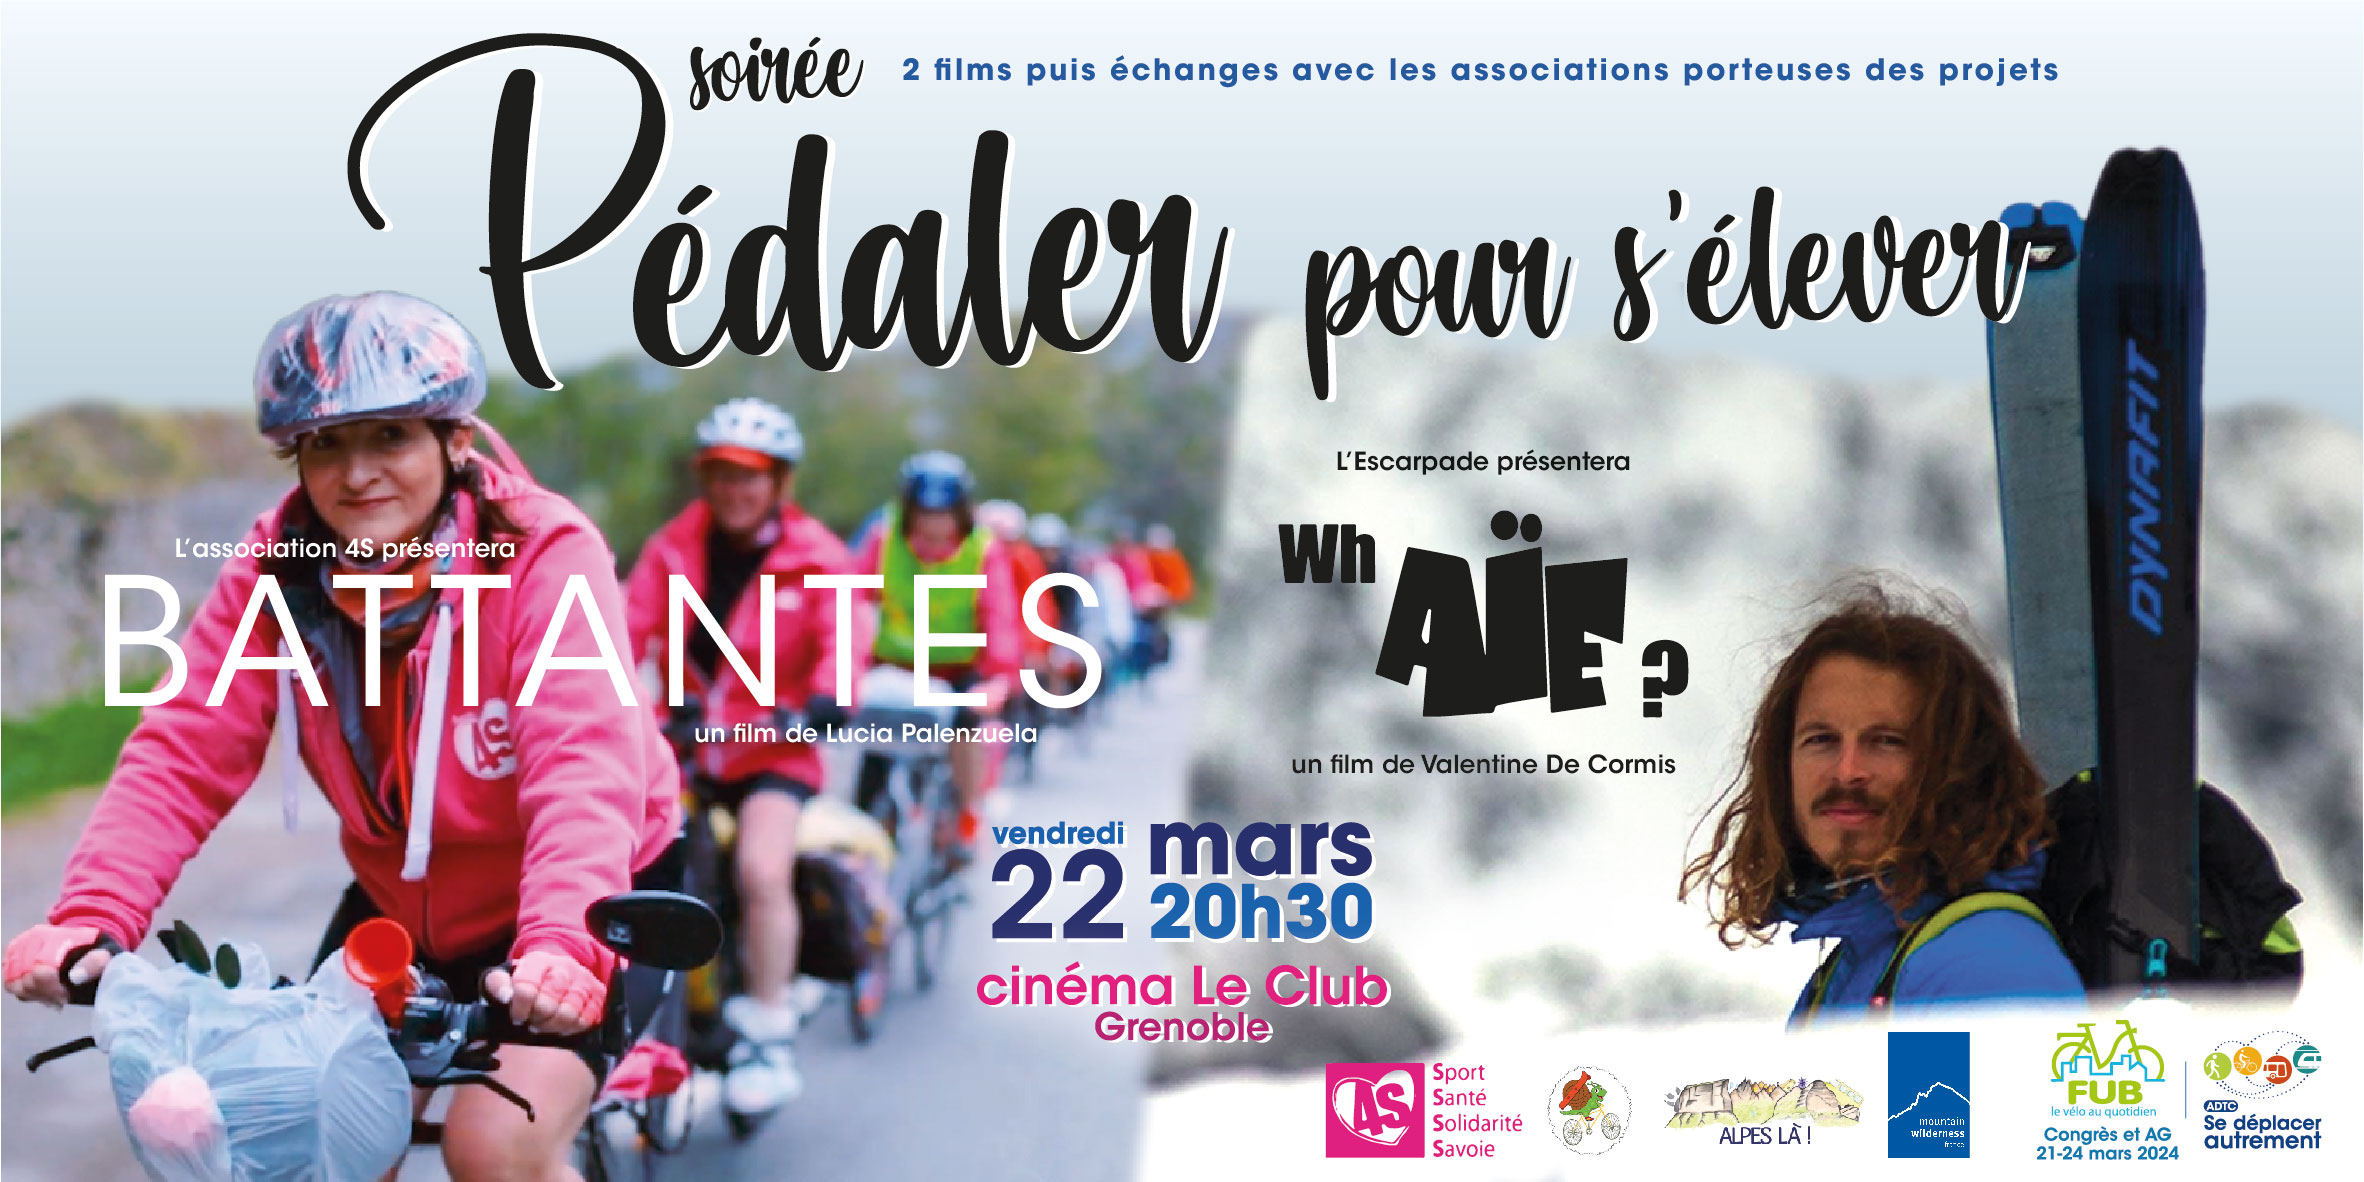 Soirée Pédaler pour s’élever – cinéma le Club à Grenoble vendredi 22 mars 20h30